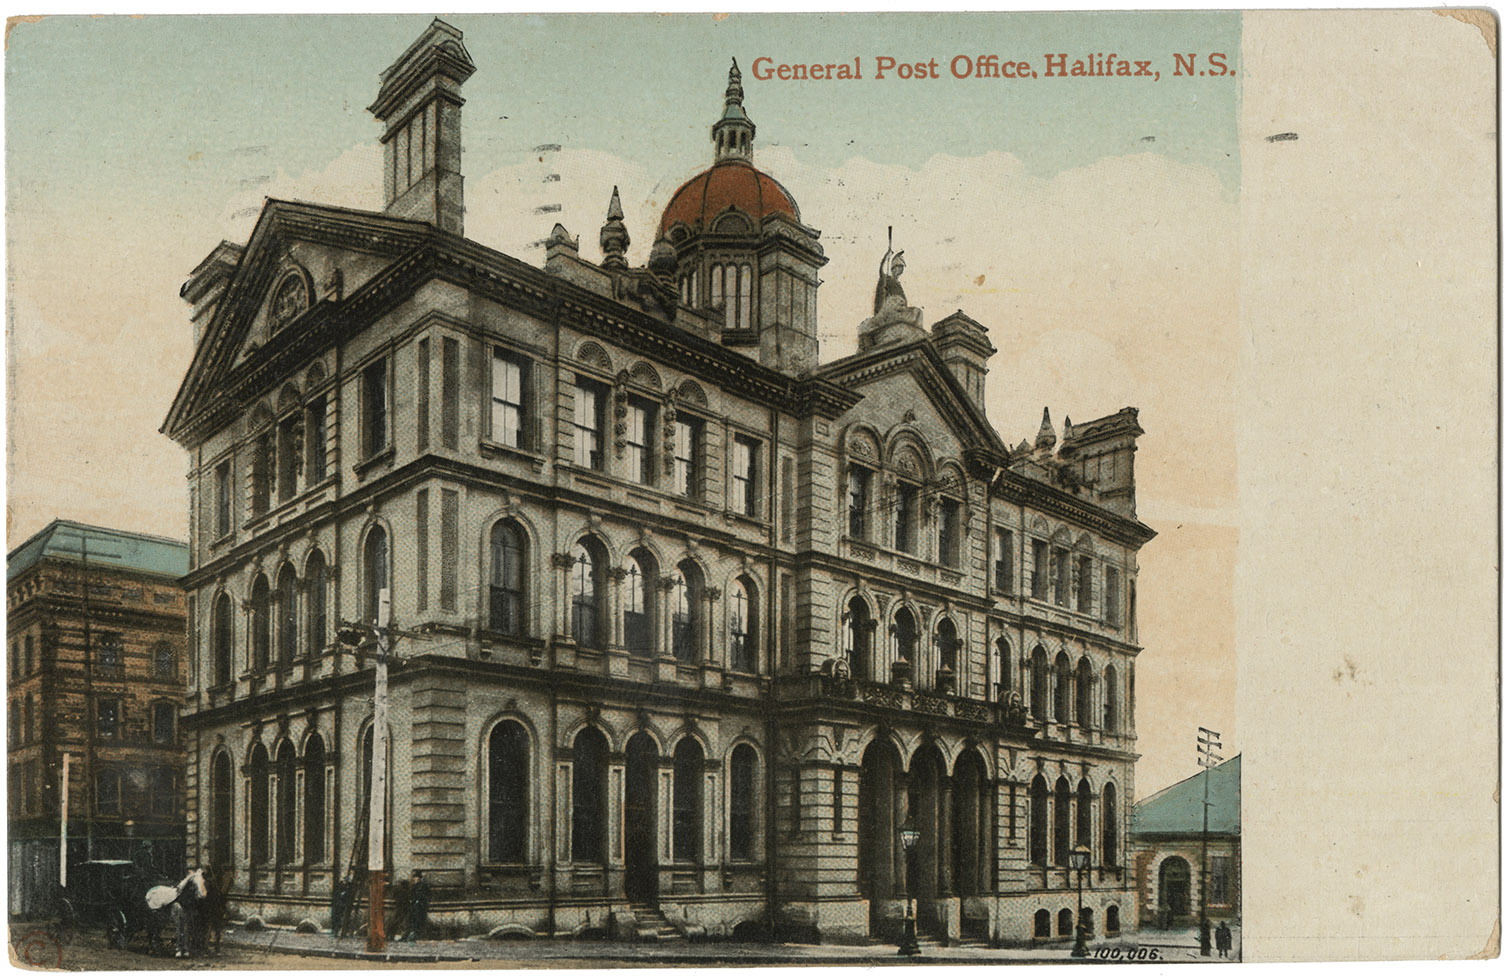 communityalbums - General Post Office, Halifax, N.S.